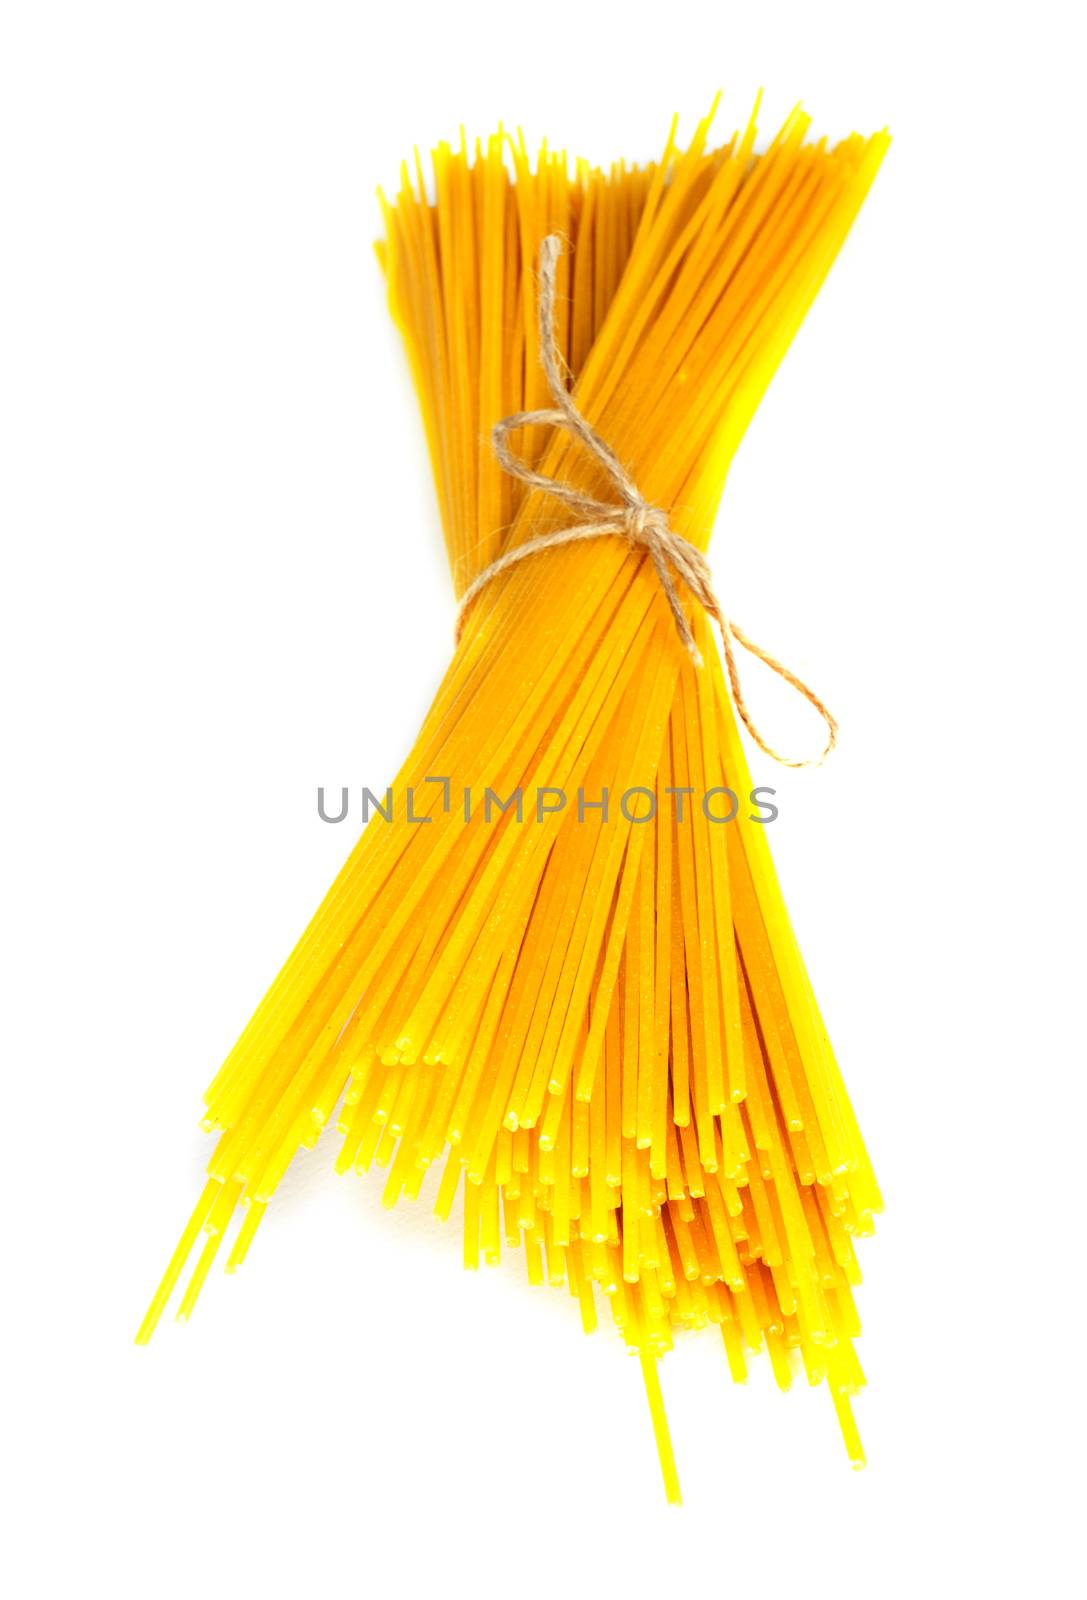 Bundle of spaghetti white isolated